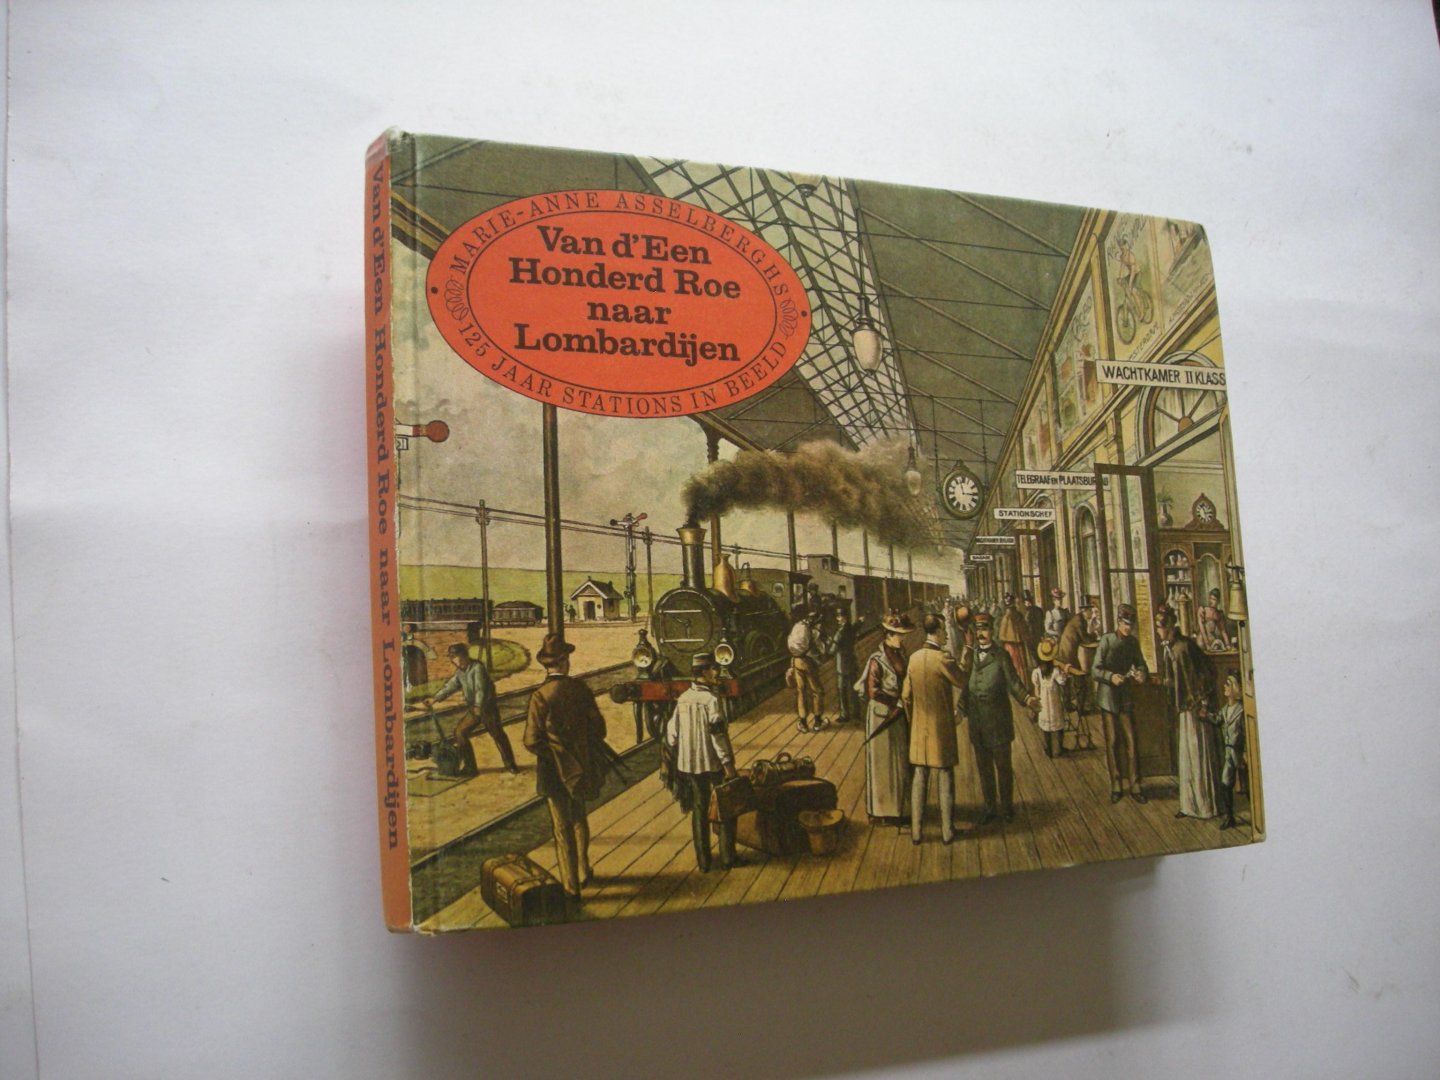 Asselberghs, Marie-Anne / Lohmann, J., voorwoord - Van d'Een Honderd Roe naar Lombardijen. 125 jaar stations in beeld